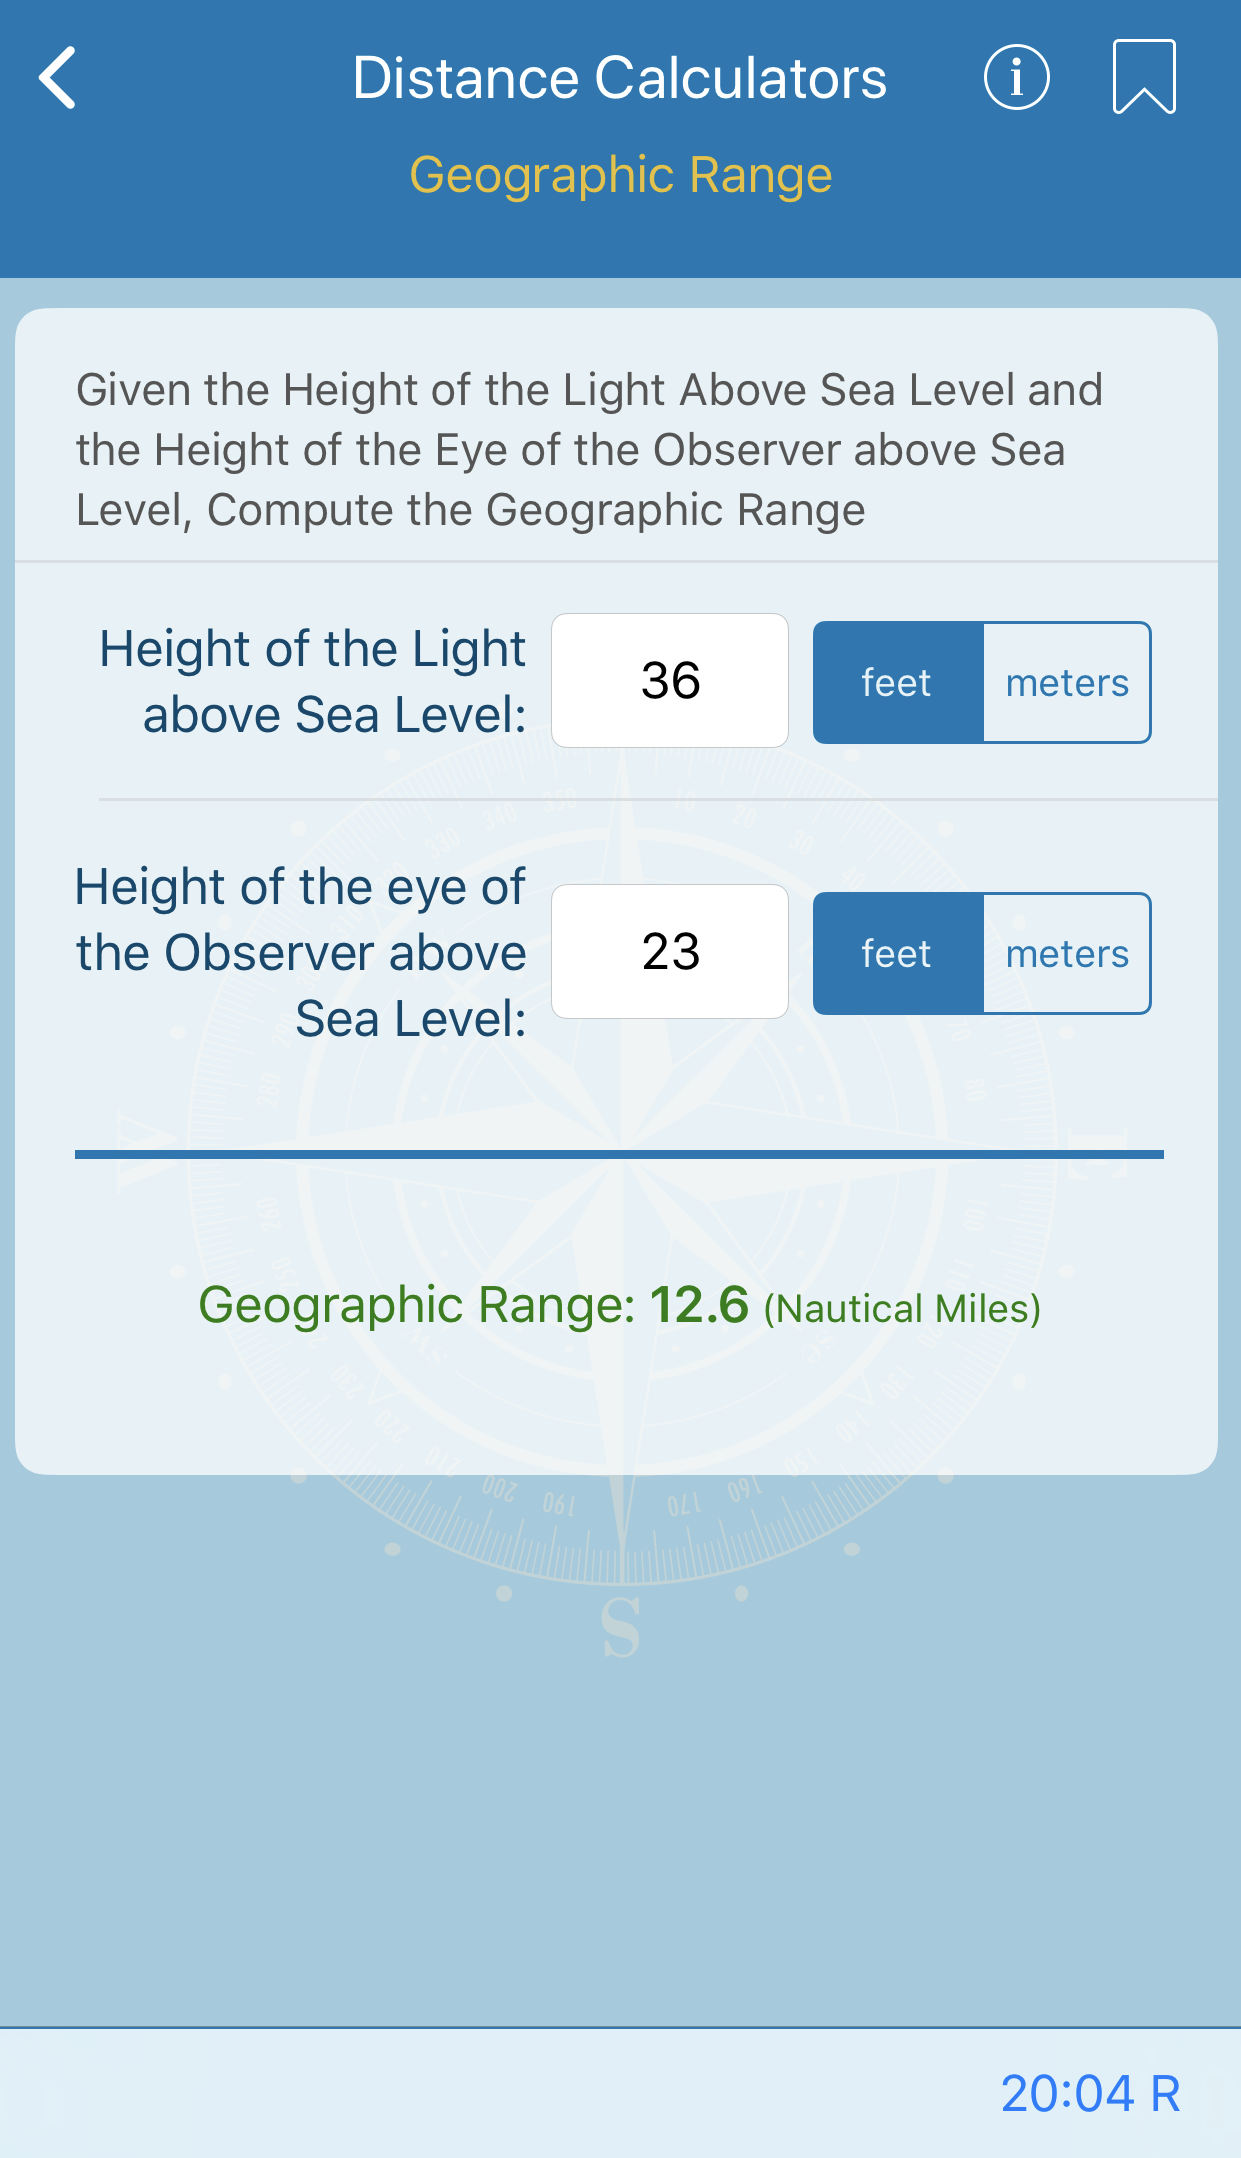 Geographic Range